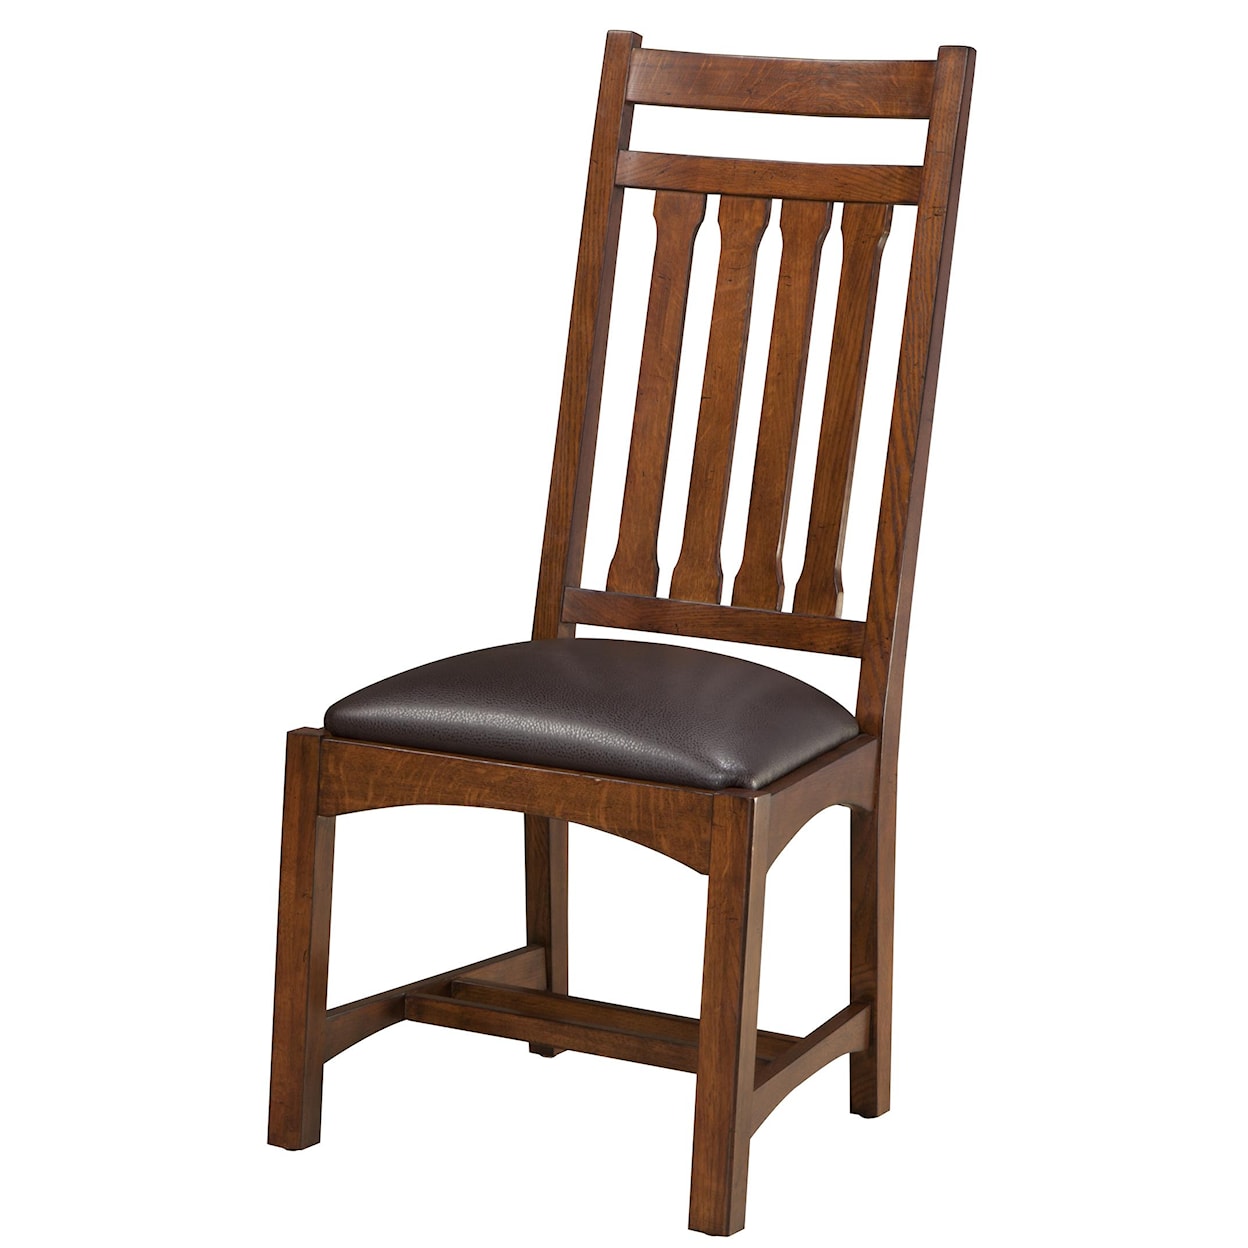 Intercon Oak Park Dining Side Chair